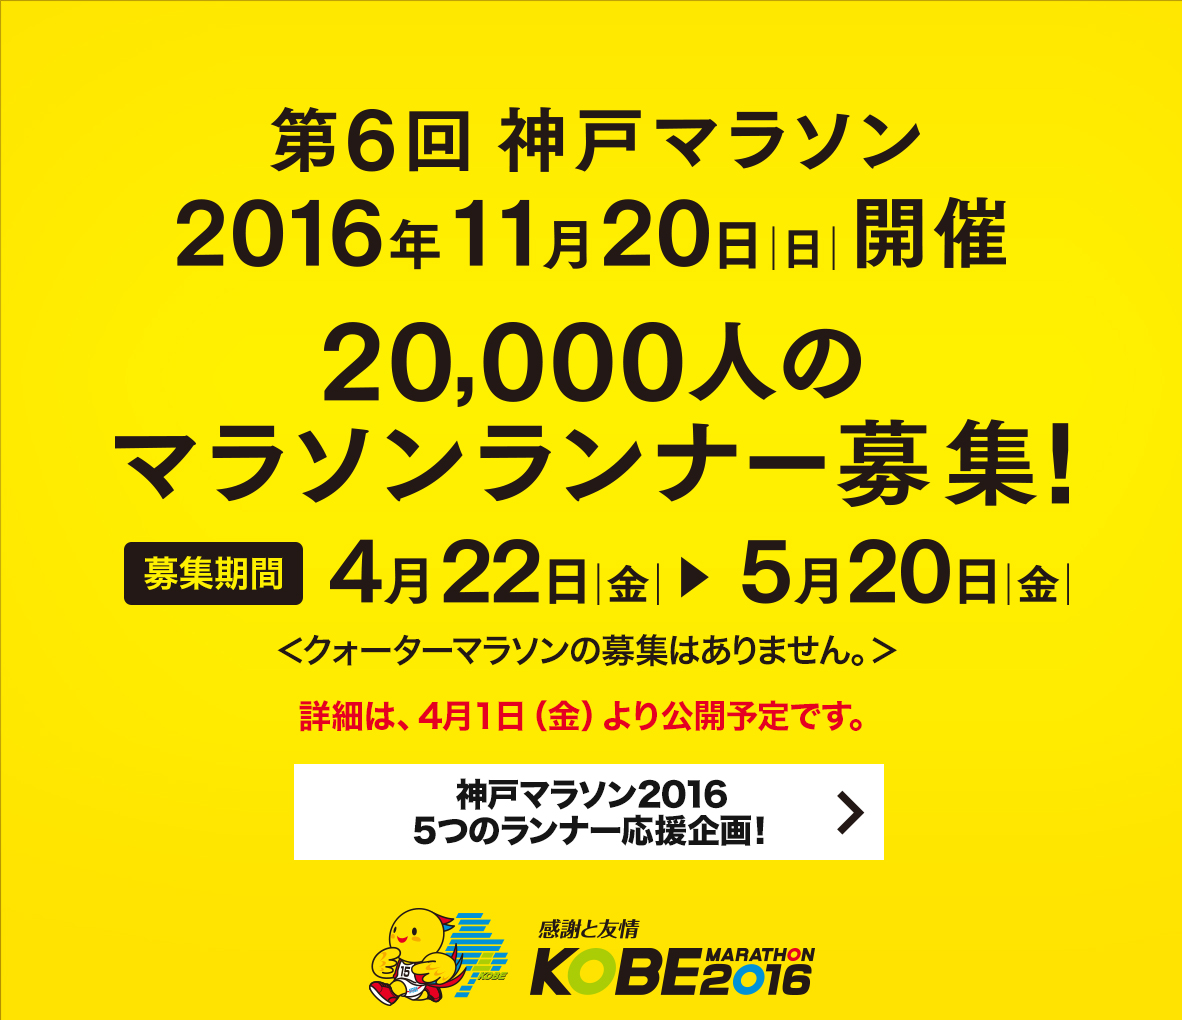 【第6回神戸マラソン】第6回神戸マラソン 2016年11月20日（日曜日）開催　20,000人のマラソンランナー募集！募集期間4月22日（金曜日）から5月20日（金曜日）まで　募集要項は、4月1日（金曜日）より公開予定です。